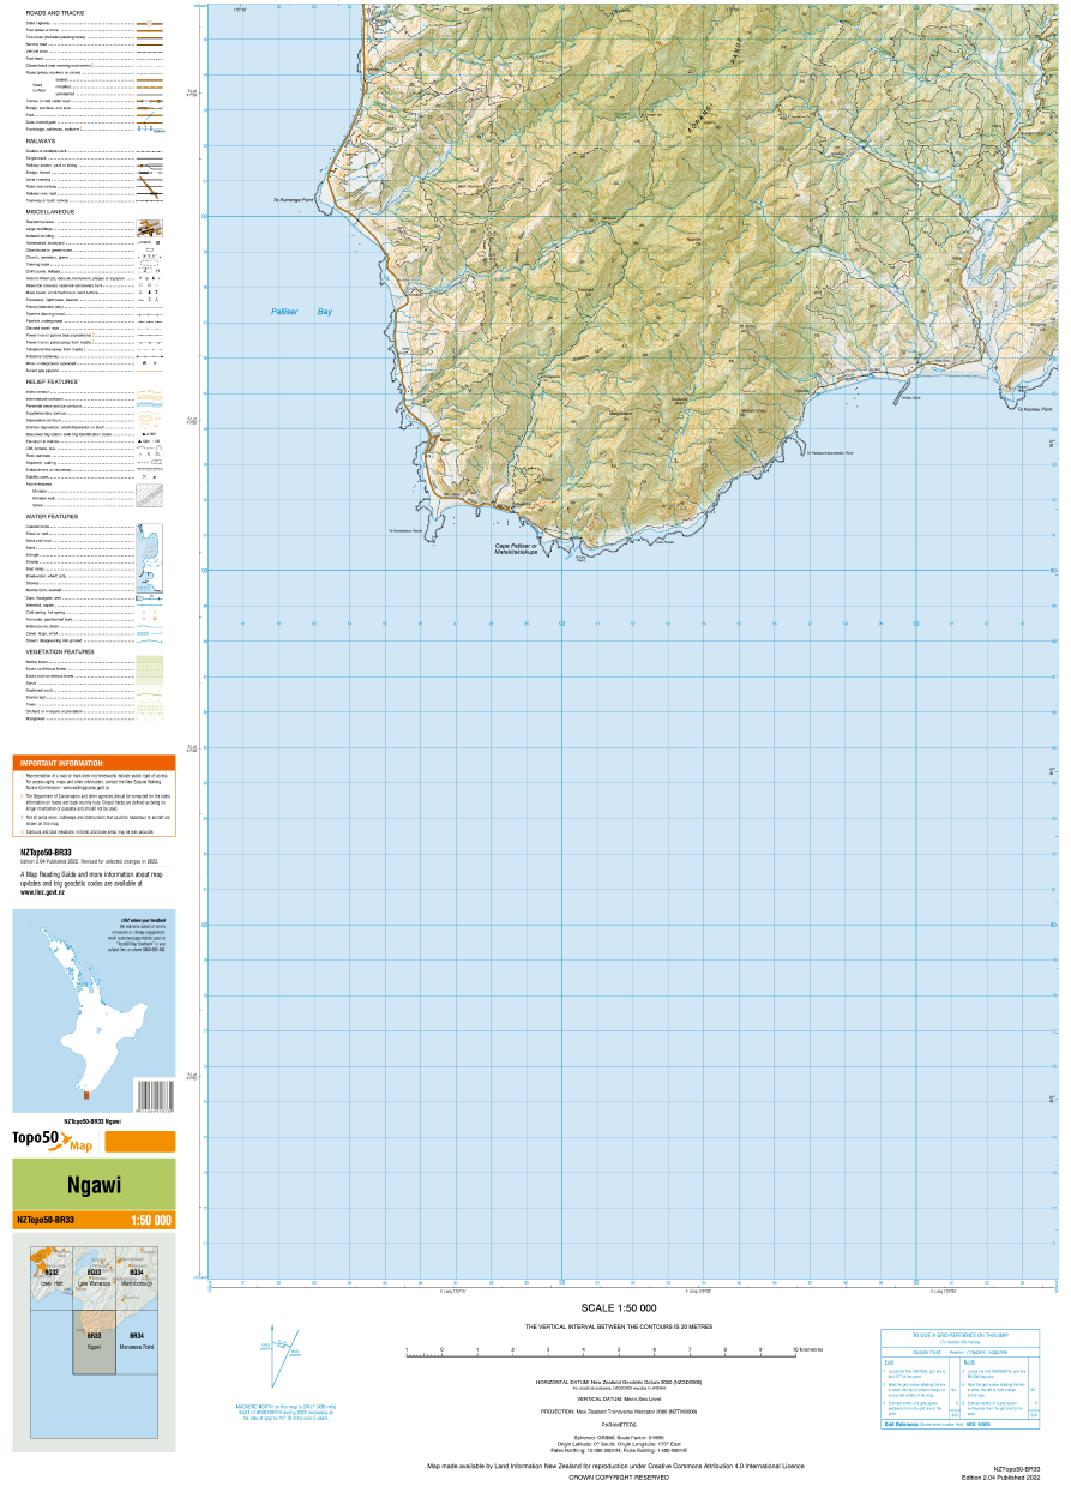 Topo map of Ngawi